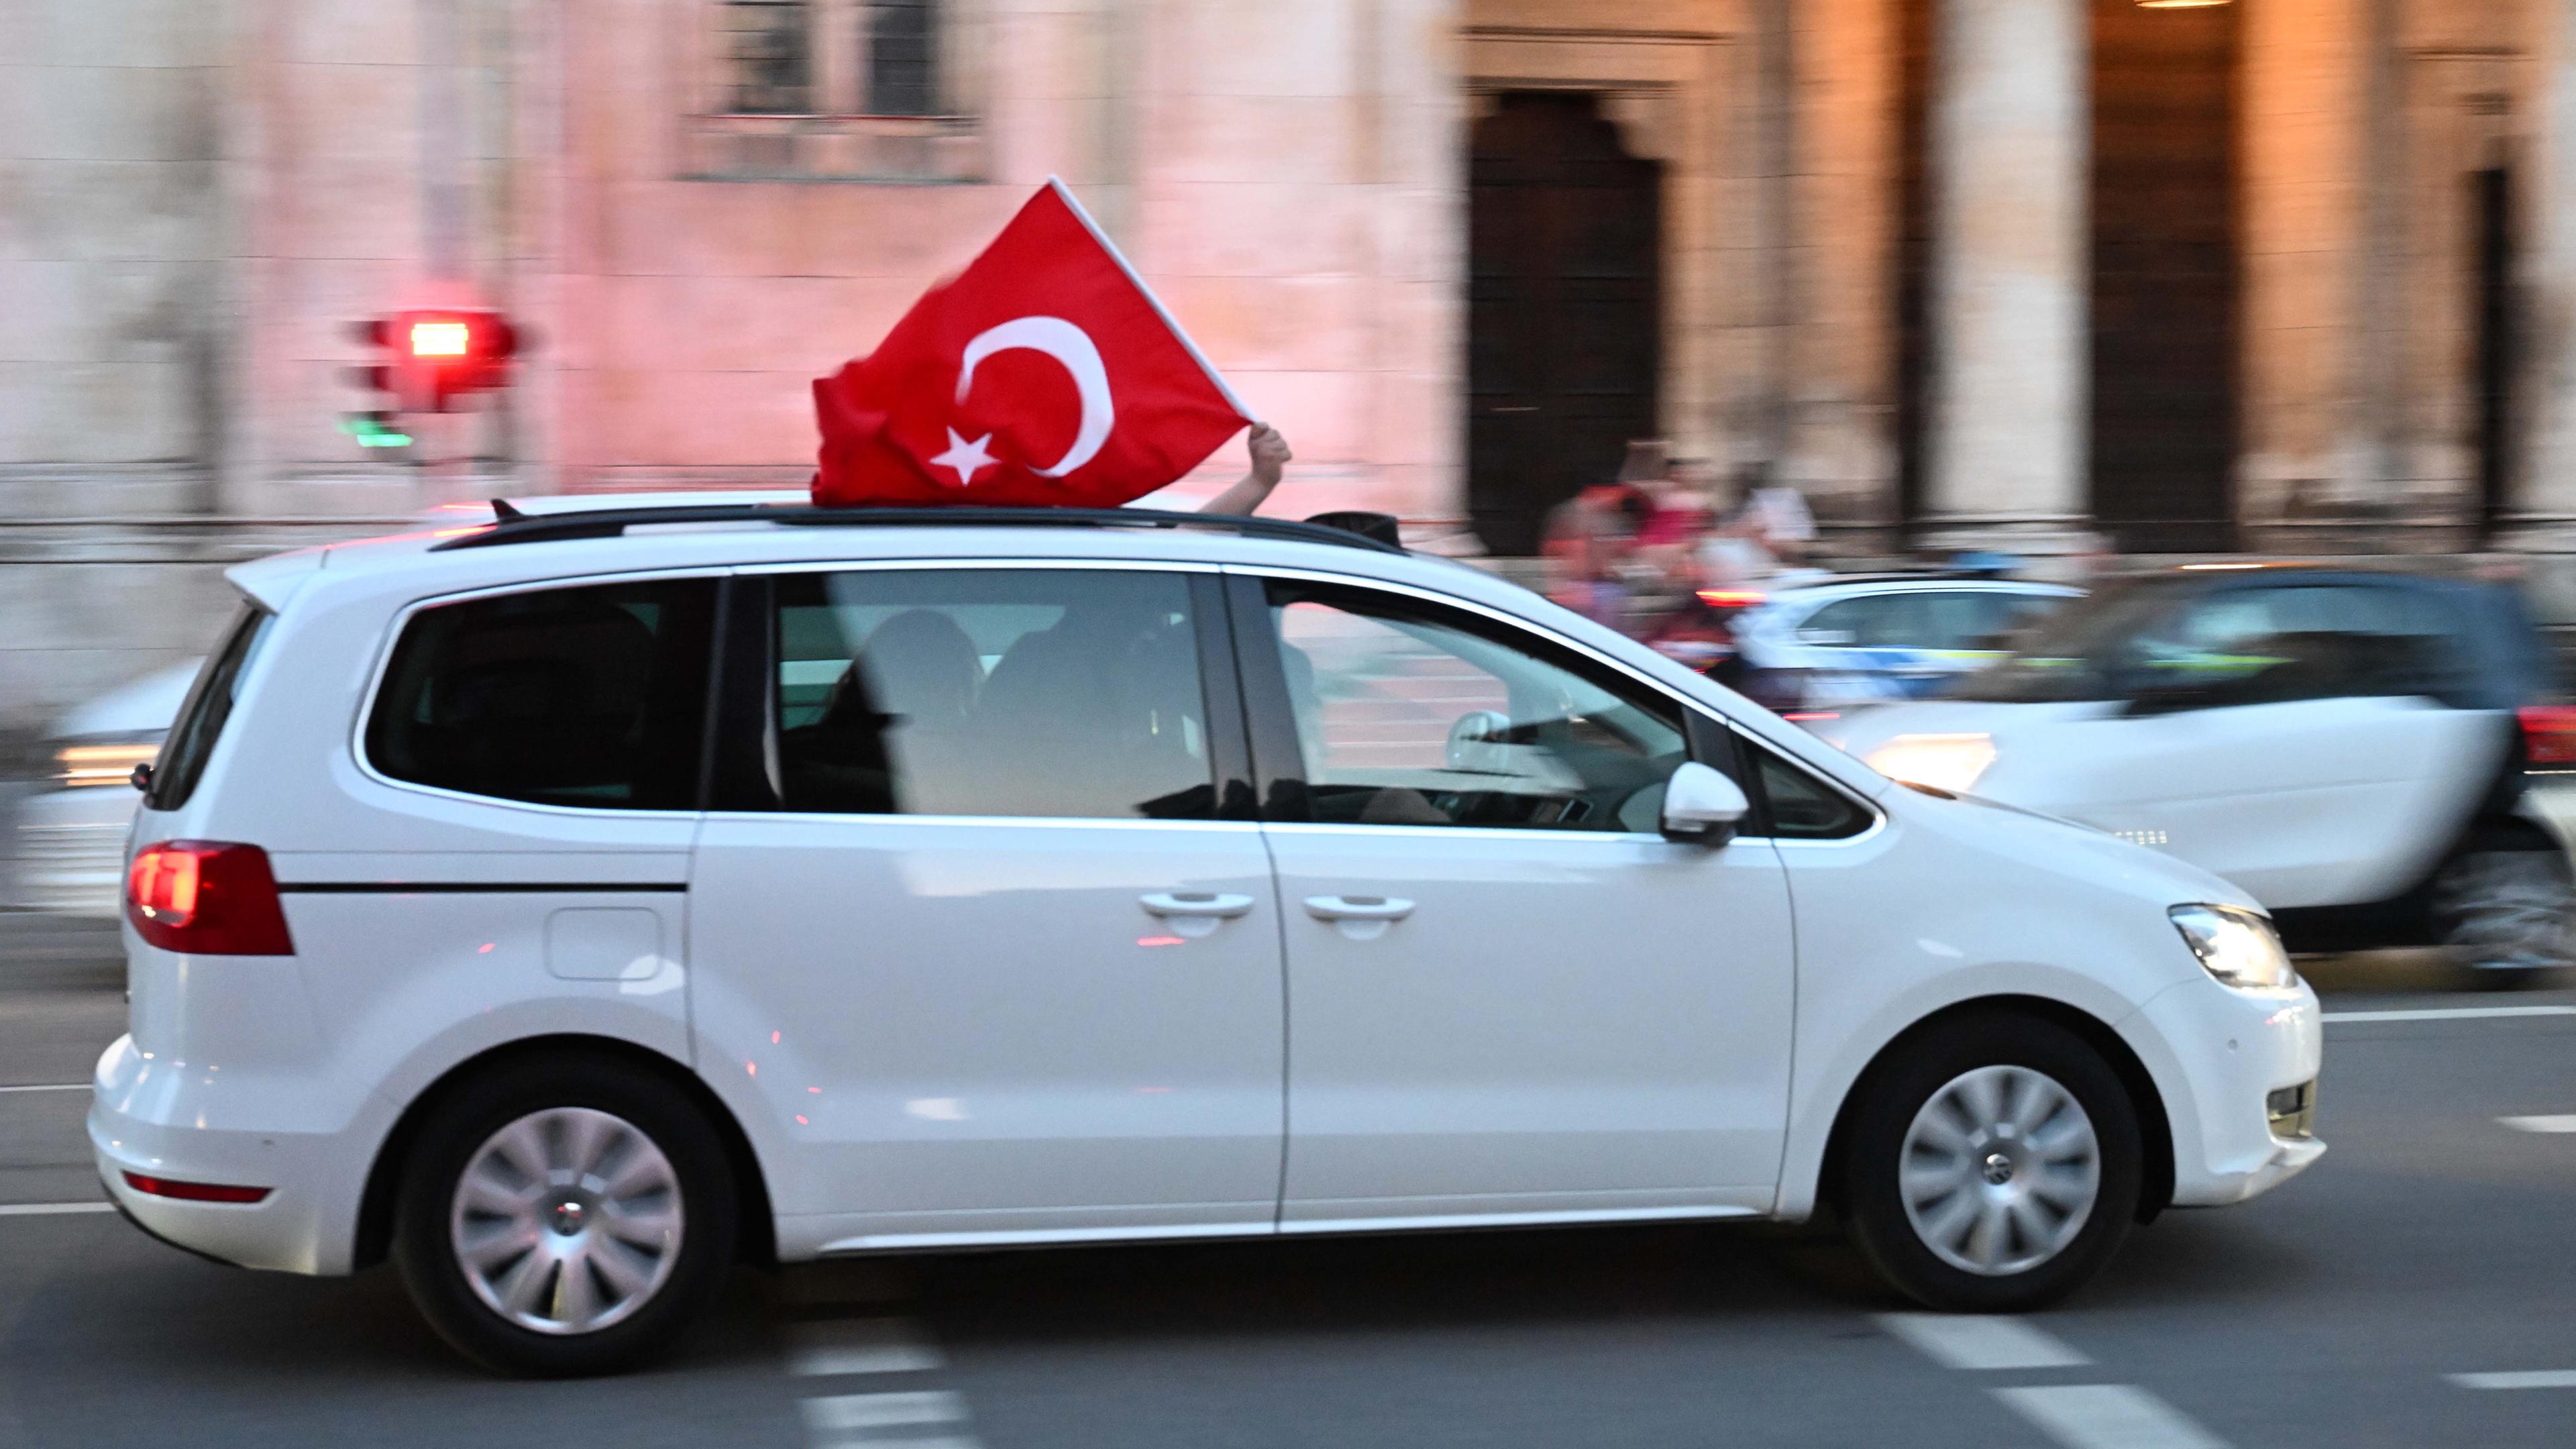 Aus einem fahrenden weißen Auto wird eine türkische Flagge gehalten. 